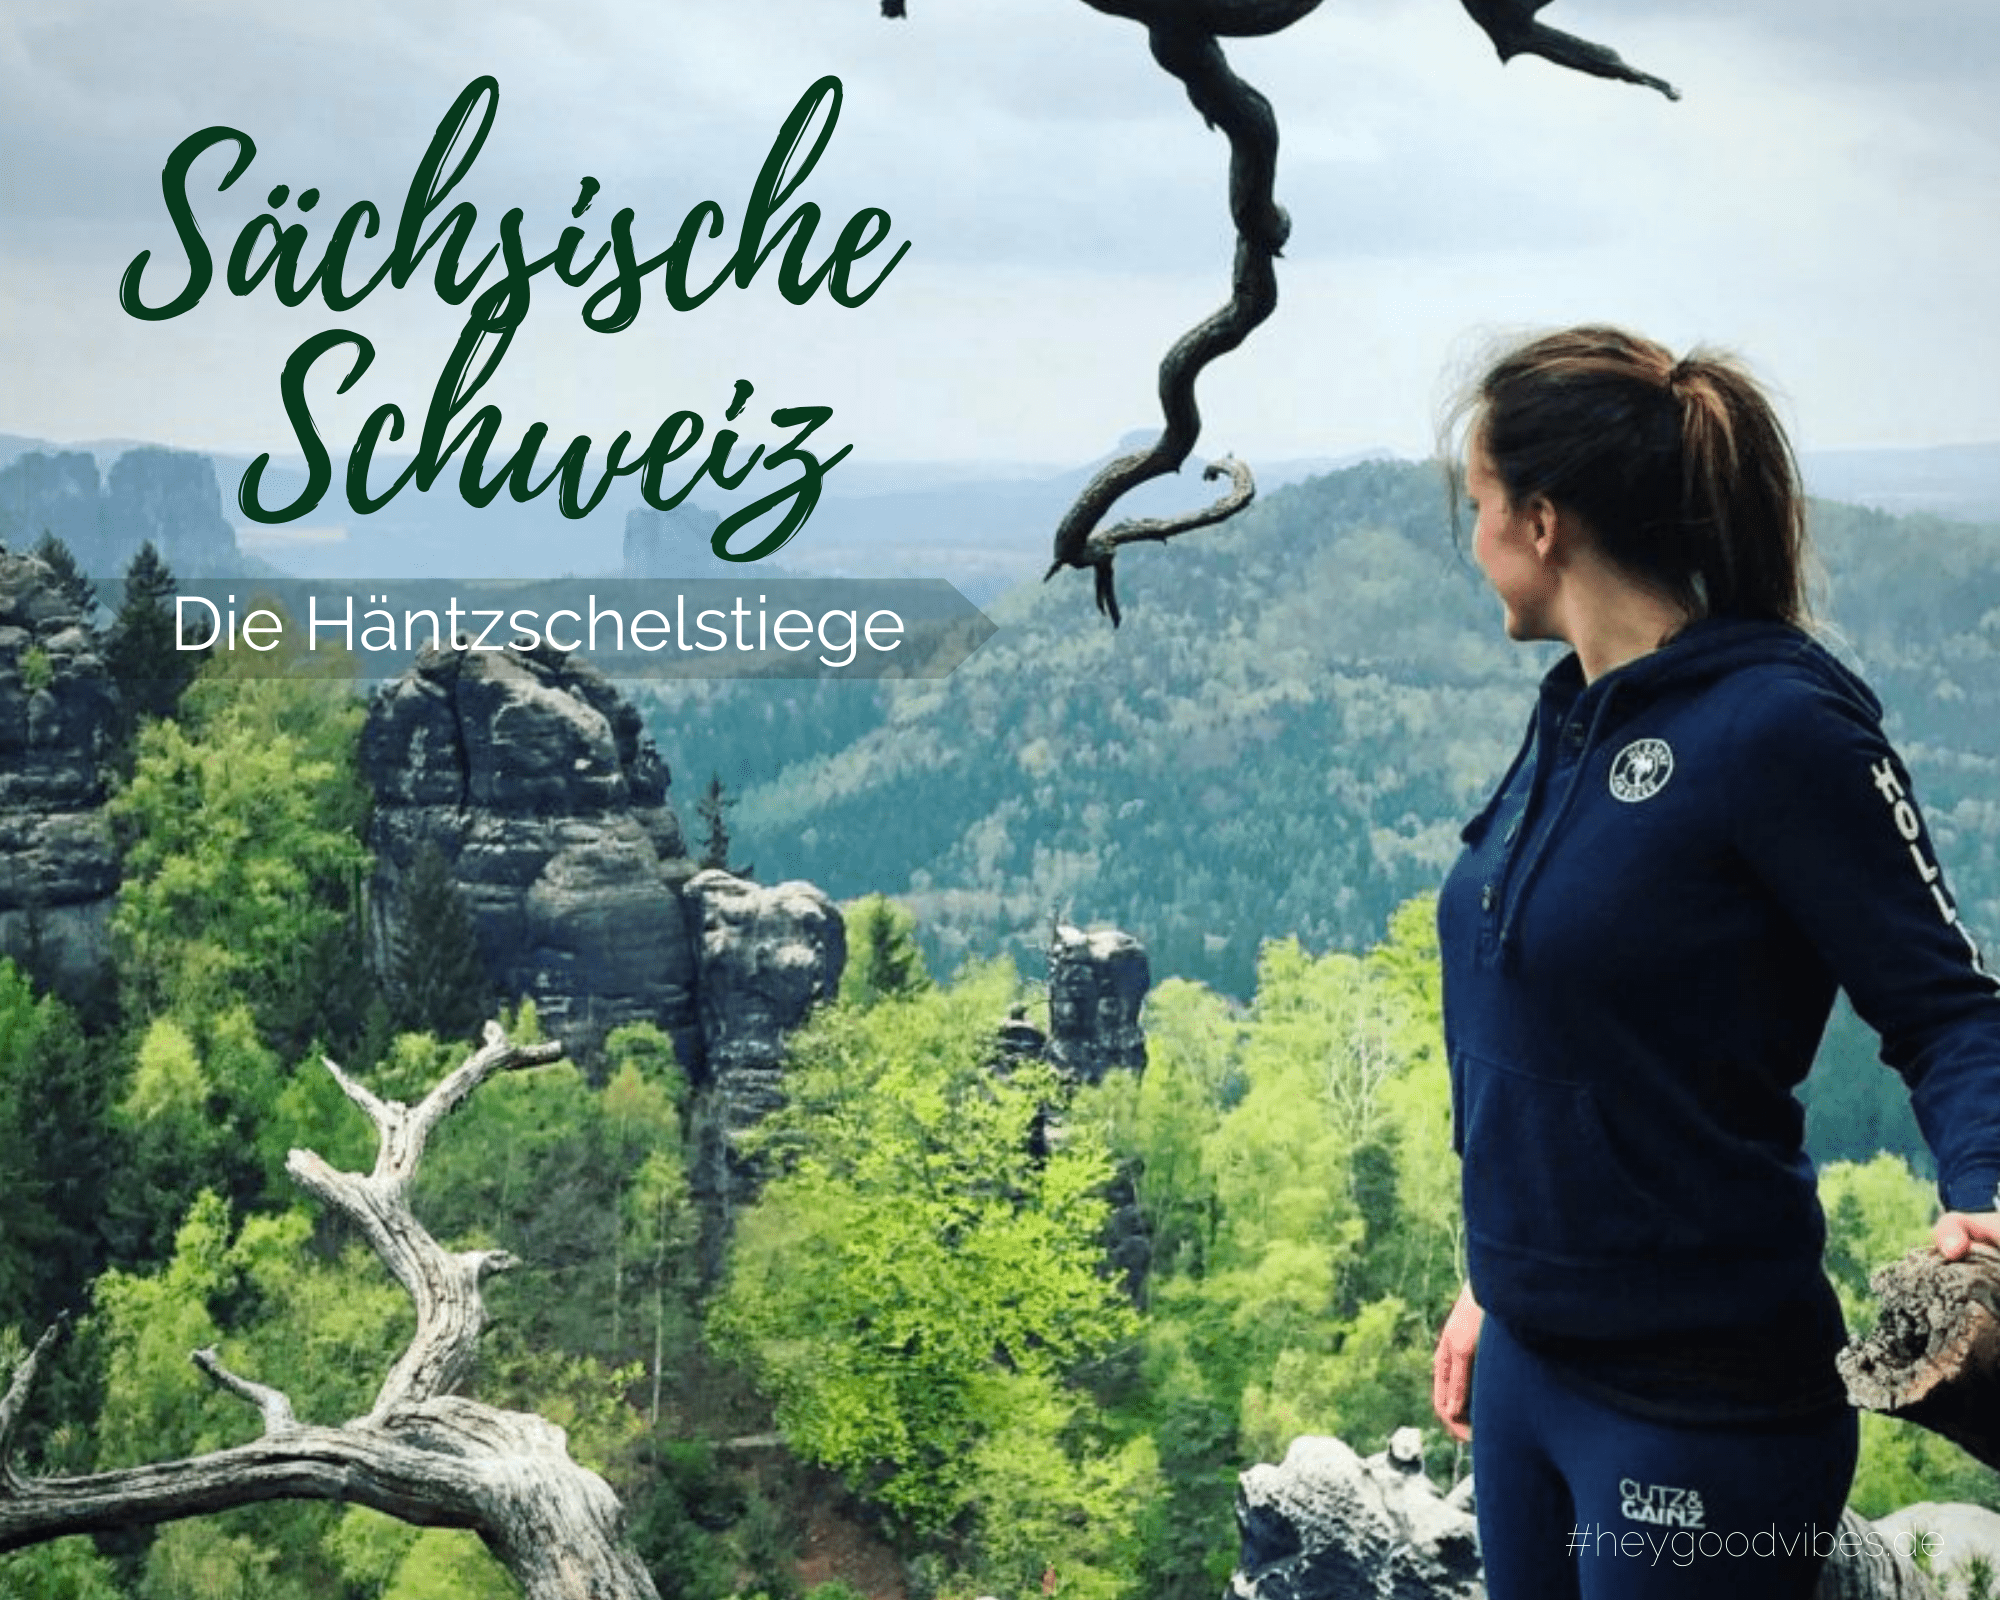 Tagestour in die „Sächsische Schweiz“ Häntzschelstiege/ Carolafelsen/ Wilde Hölle